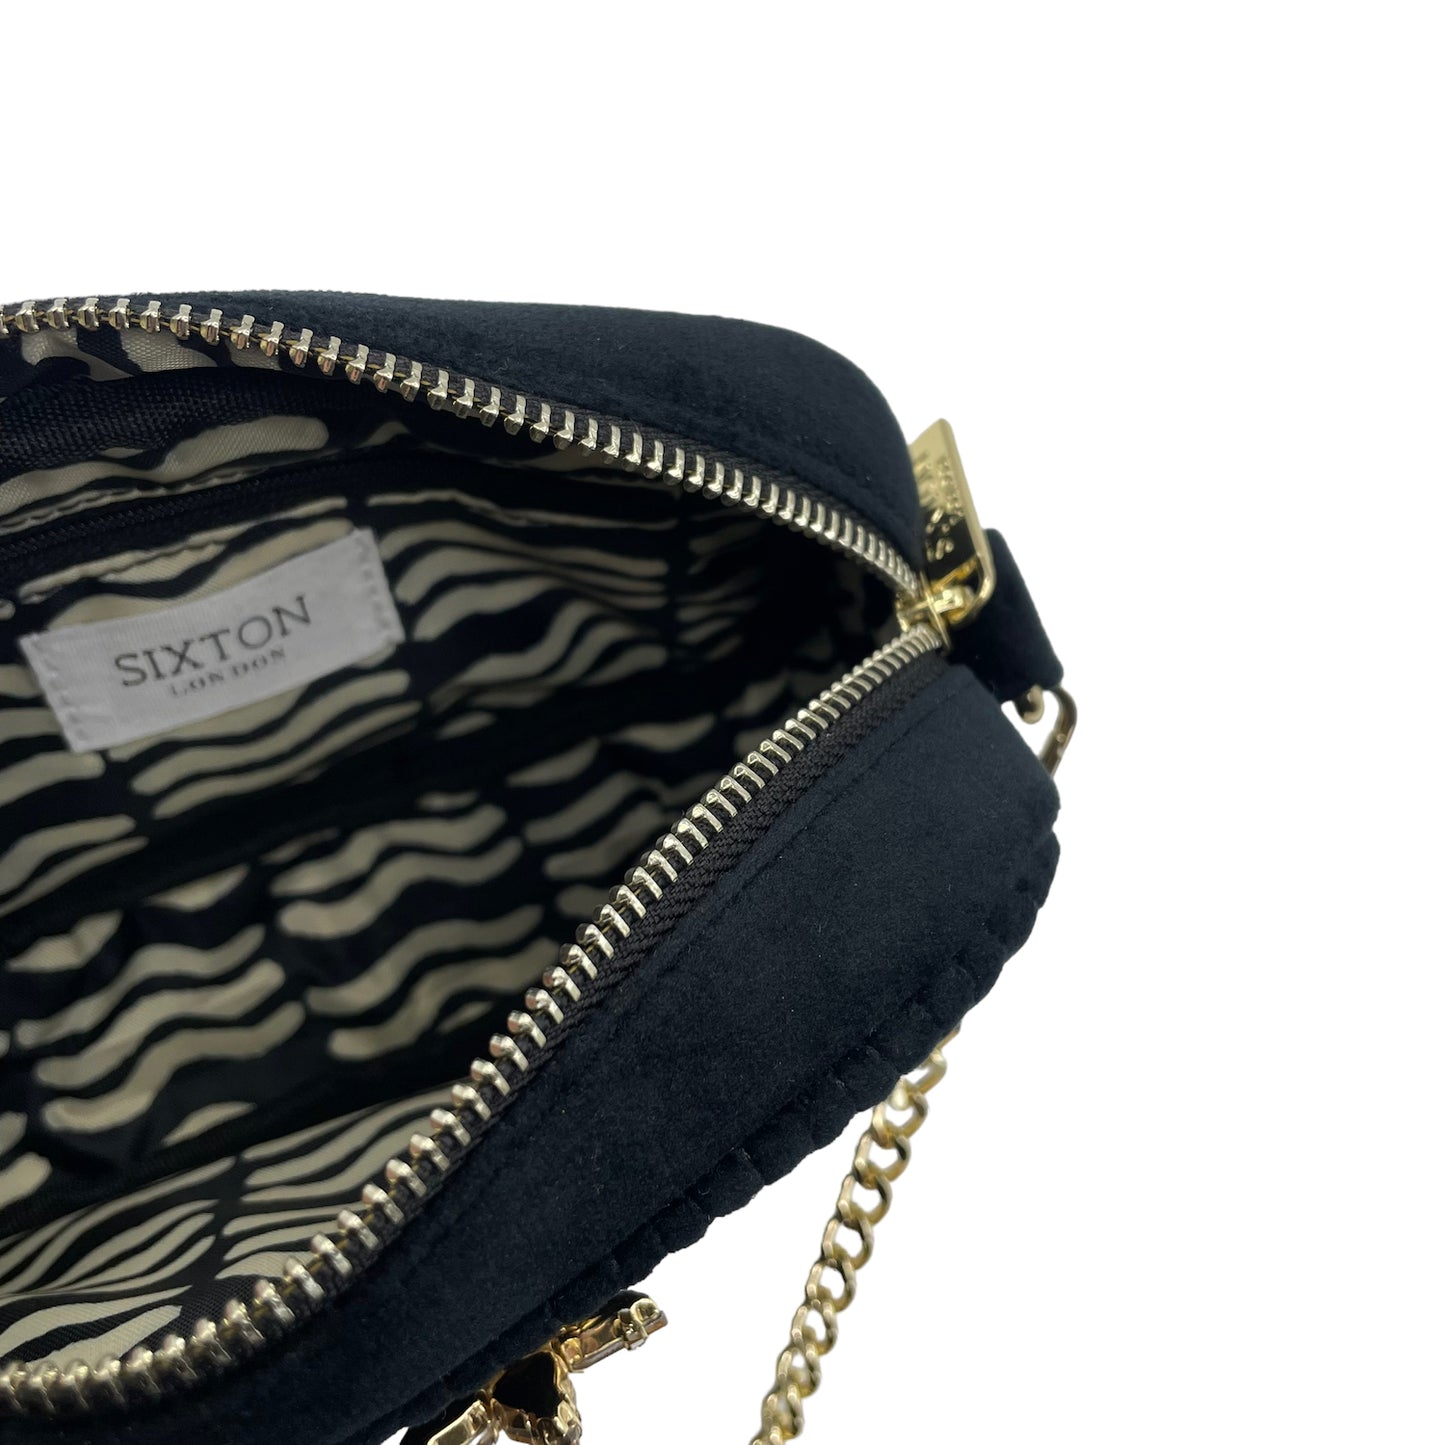 Velvet Rivington handbag in black, recycled velvet